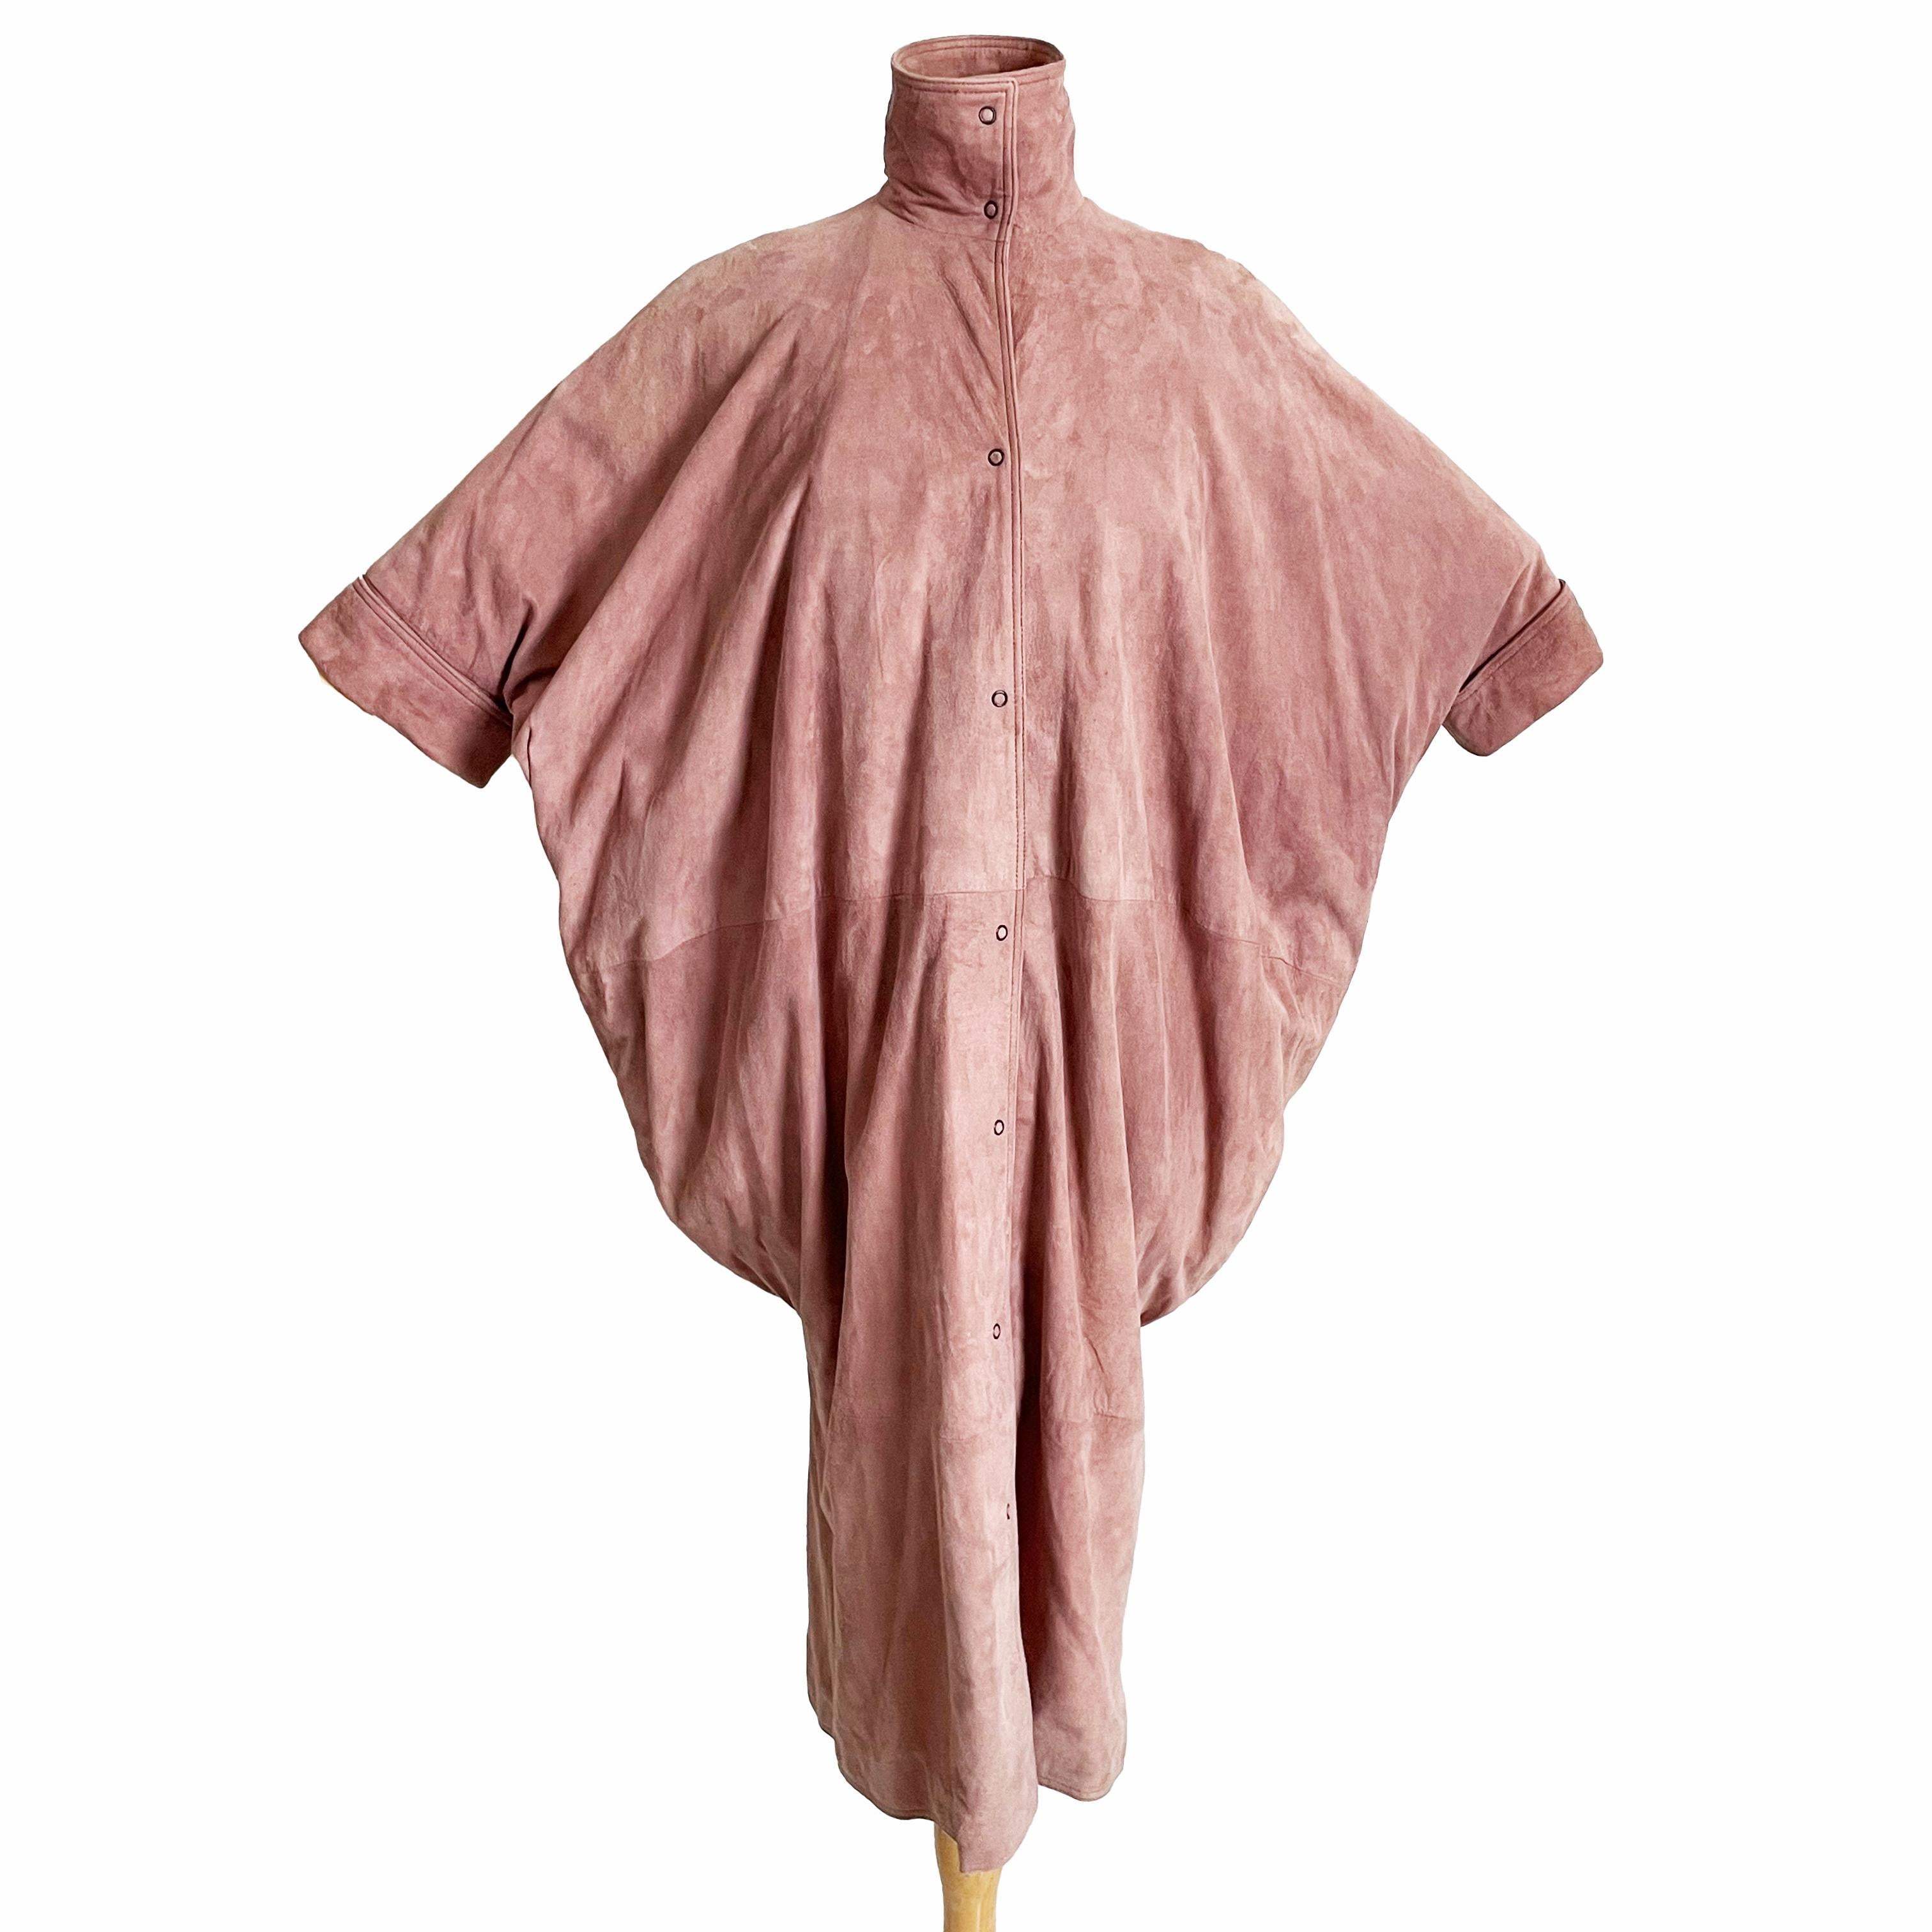 Authentische Fledermausjacke von Fendi aus Vorbesitz, wahrscheinlich von Karl Lagerfeld in den 1980er Jahren entworfen.  Wir haben eine Skizze von Karl Lagerfeld beigefügt (siehe letztes Bild), der zwischen den 60er und 90er Jahren mehr als 50 Jahre